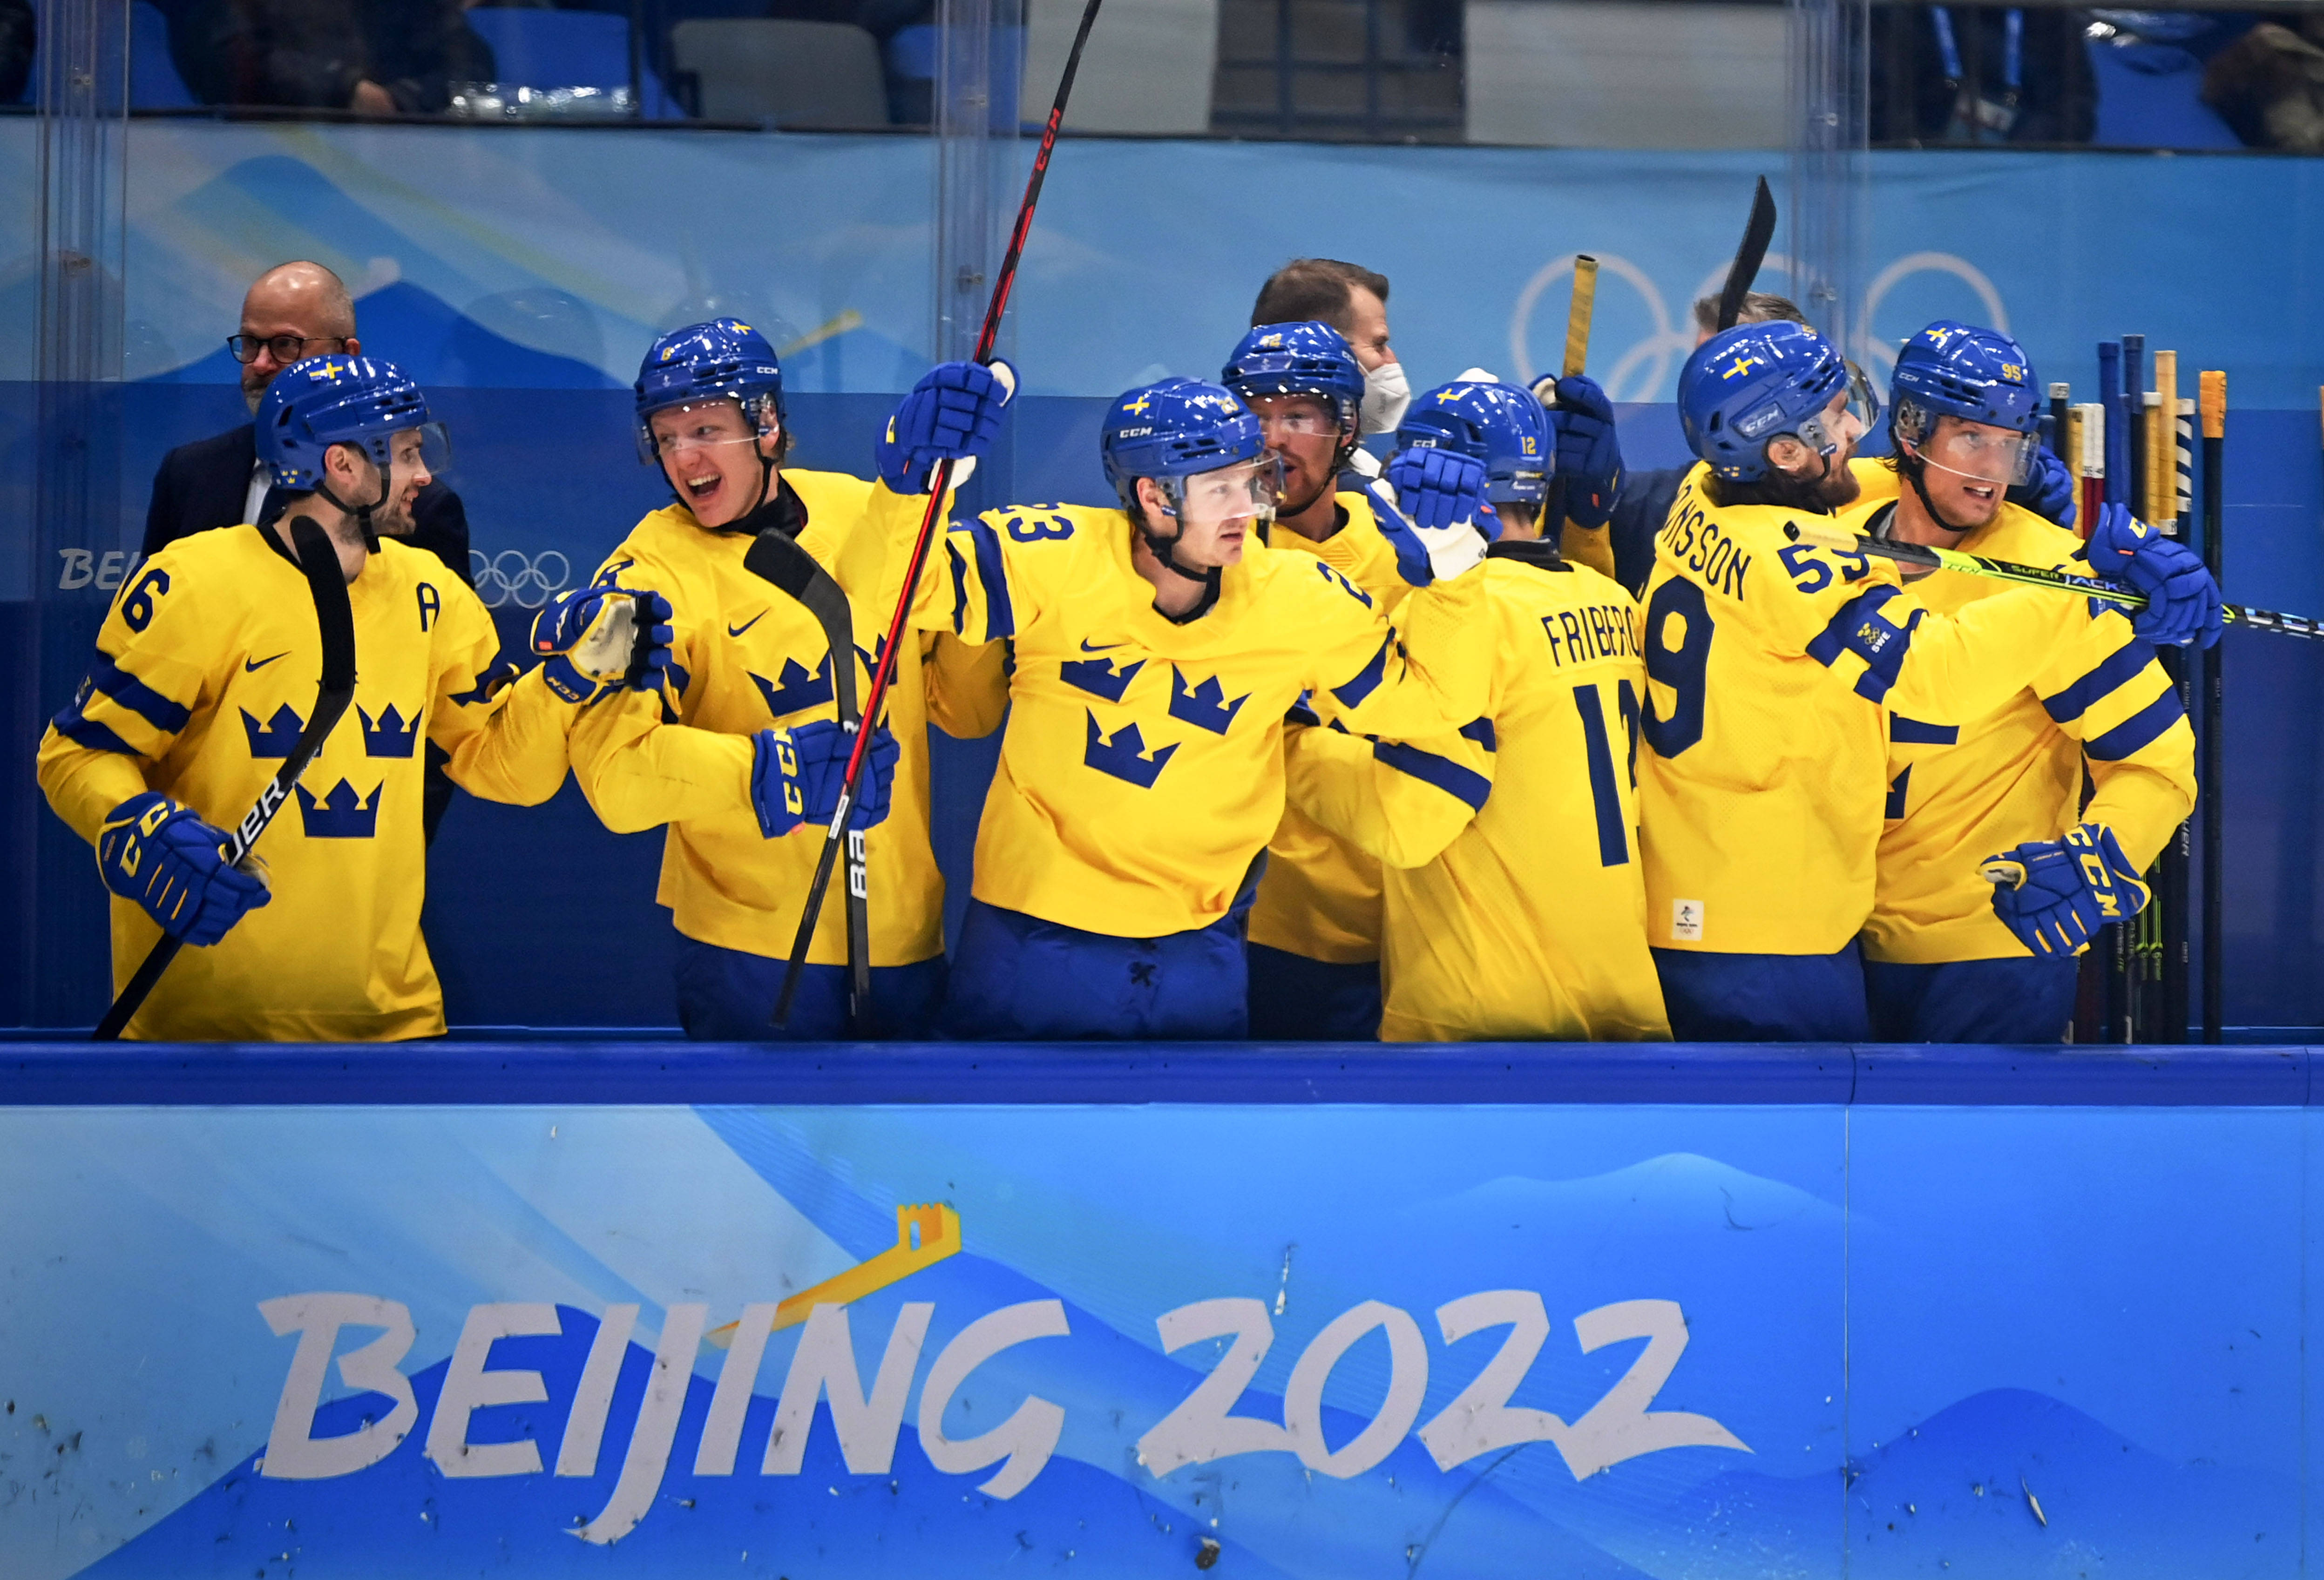 当日,在国家体育馆举行的北京2022年冬奥会男子冰球四分之一决赛中